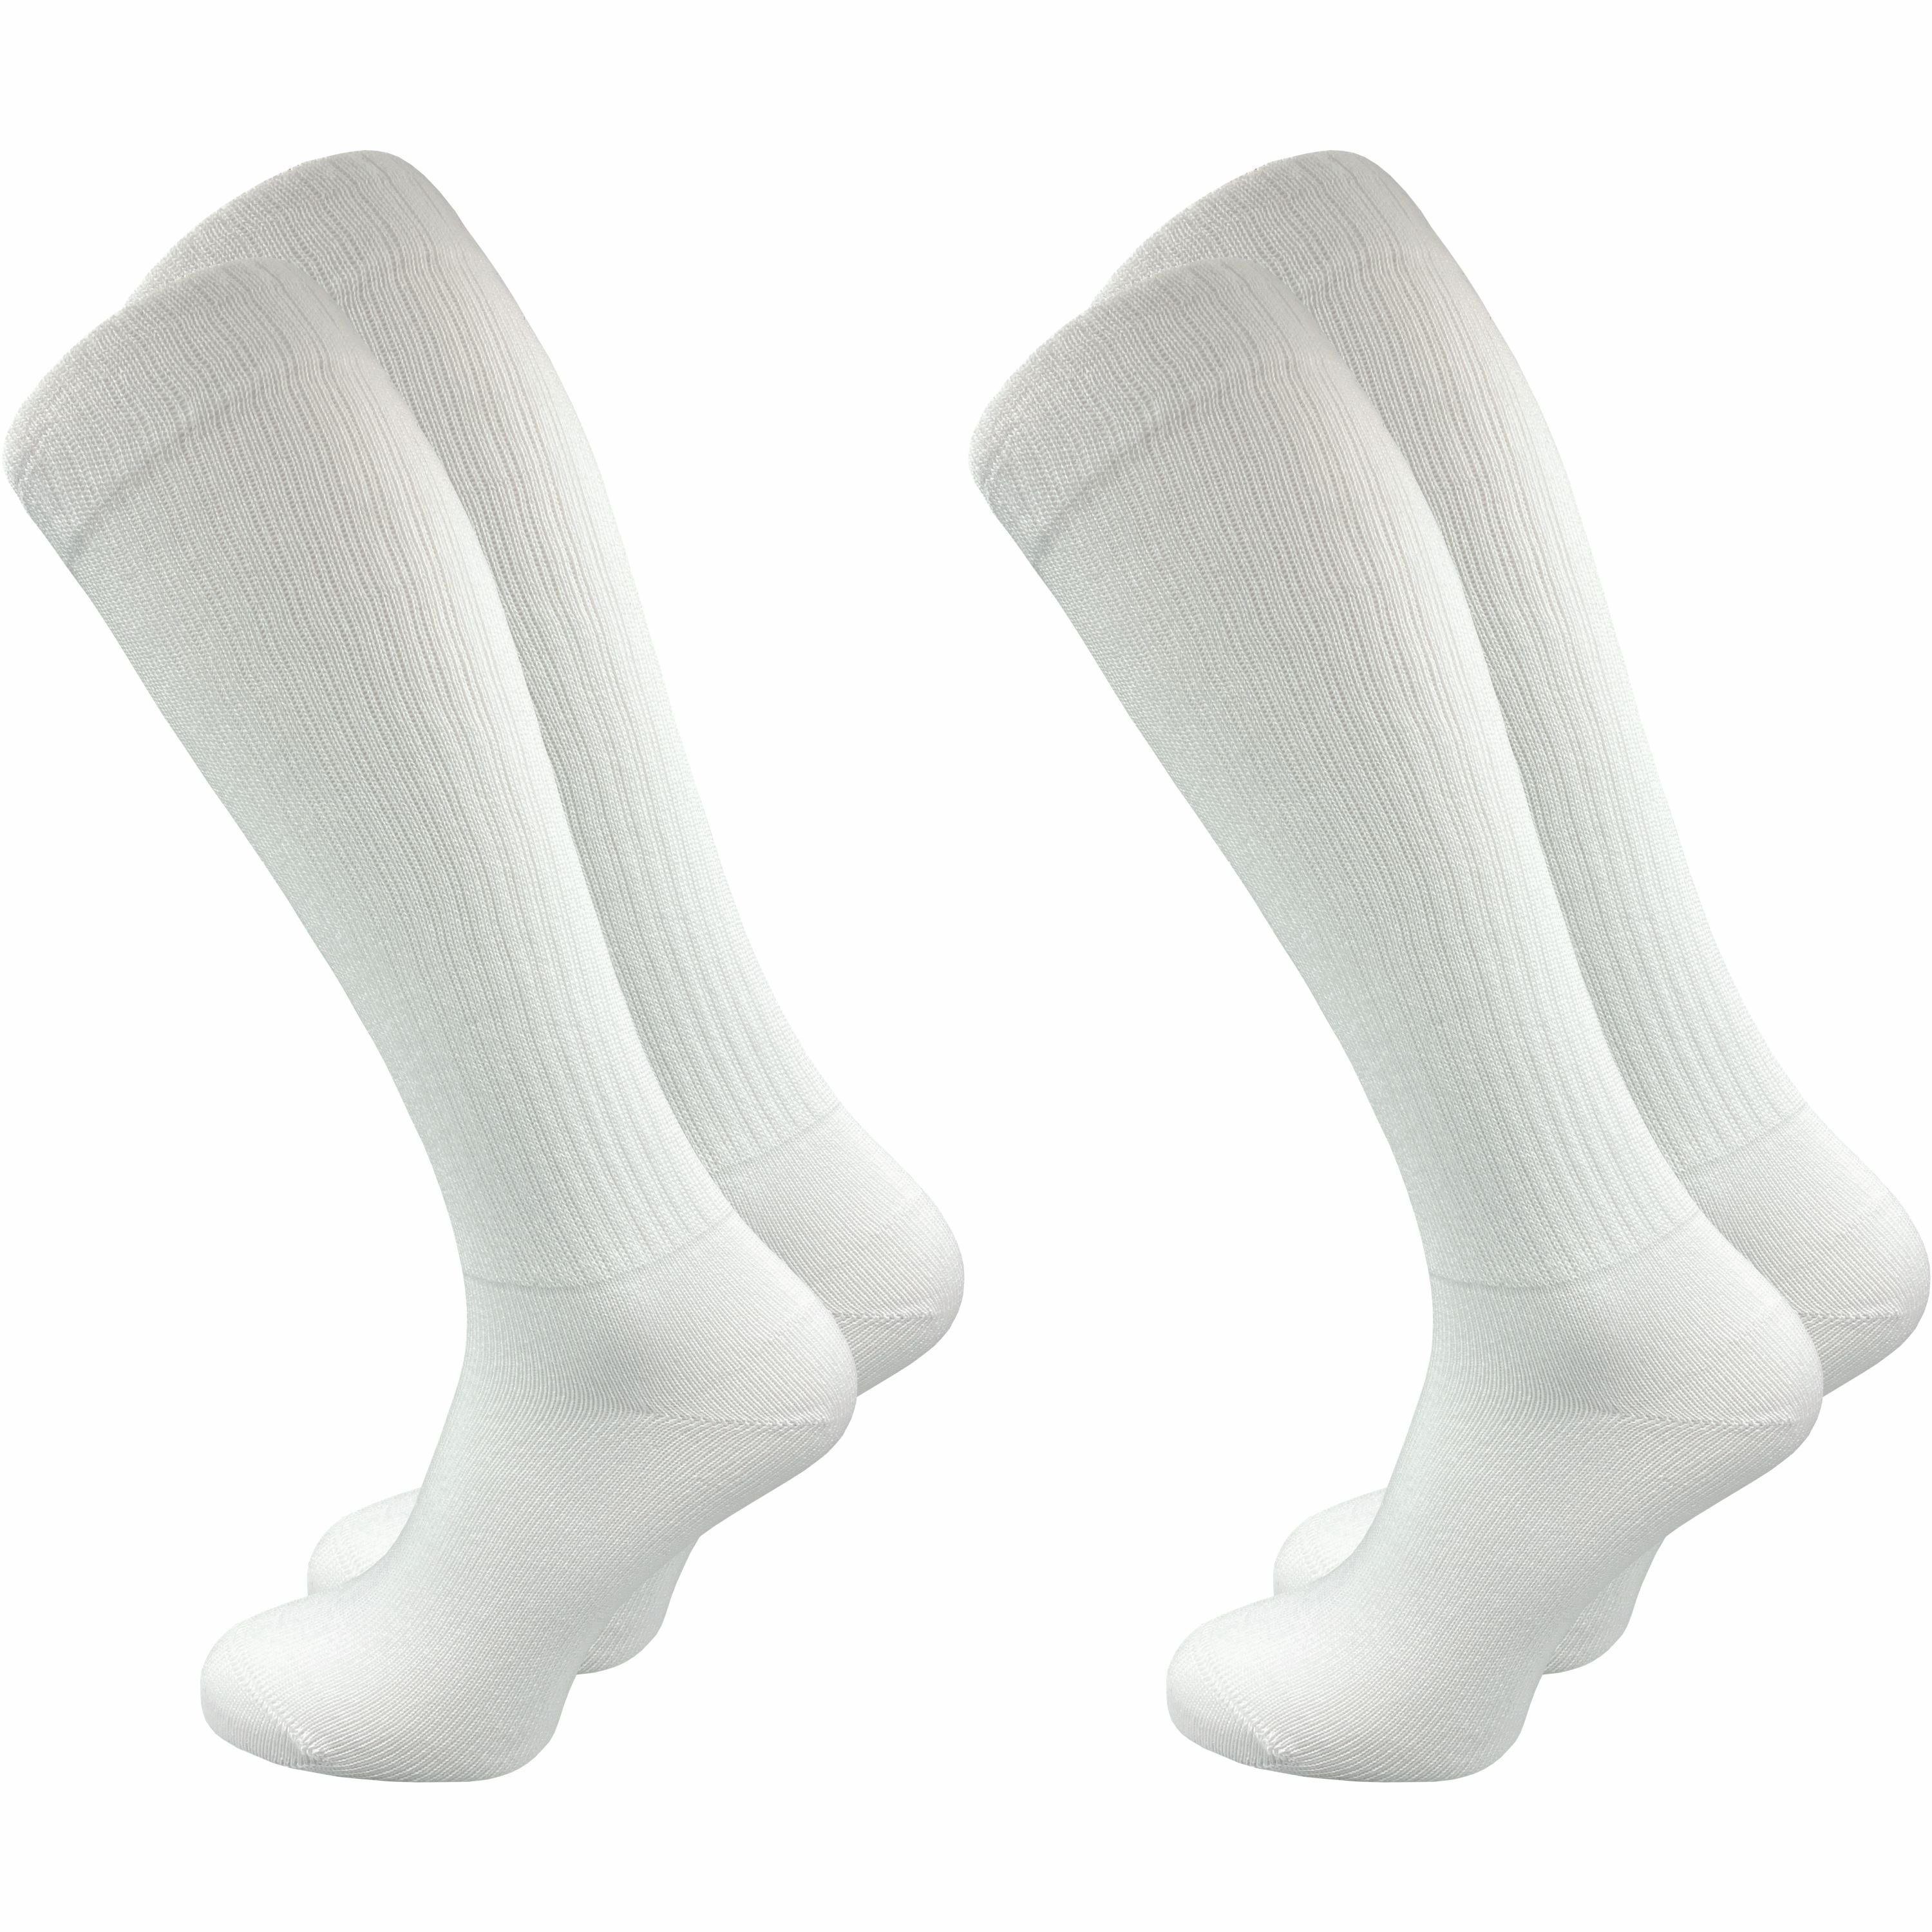 GAWILO Kniestrümpfe Retro für Damen mit stylischen Streifen, weiß & schwarz, aus Baumwolle (2 Paar) Knielange Socken im sportlichen Look - auch zum Wandern geeignet